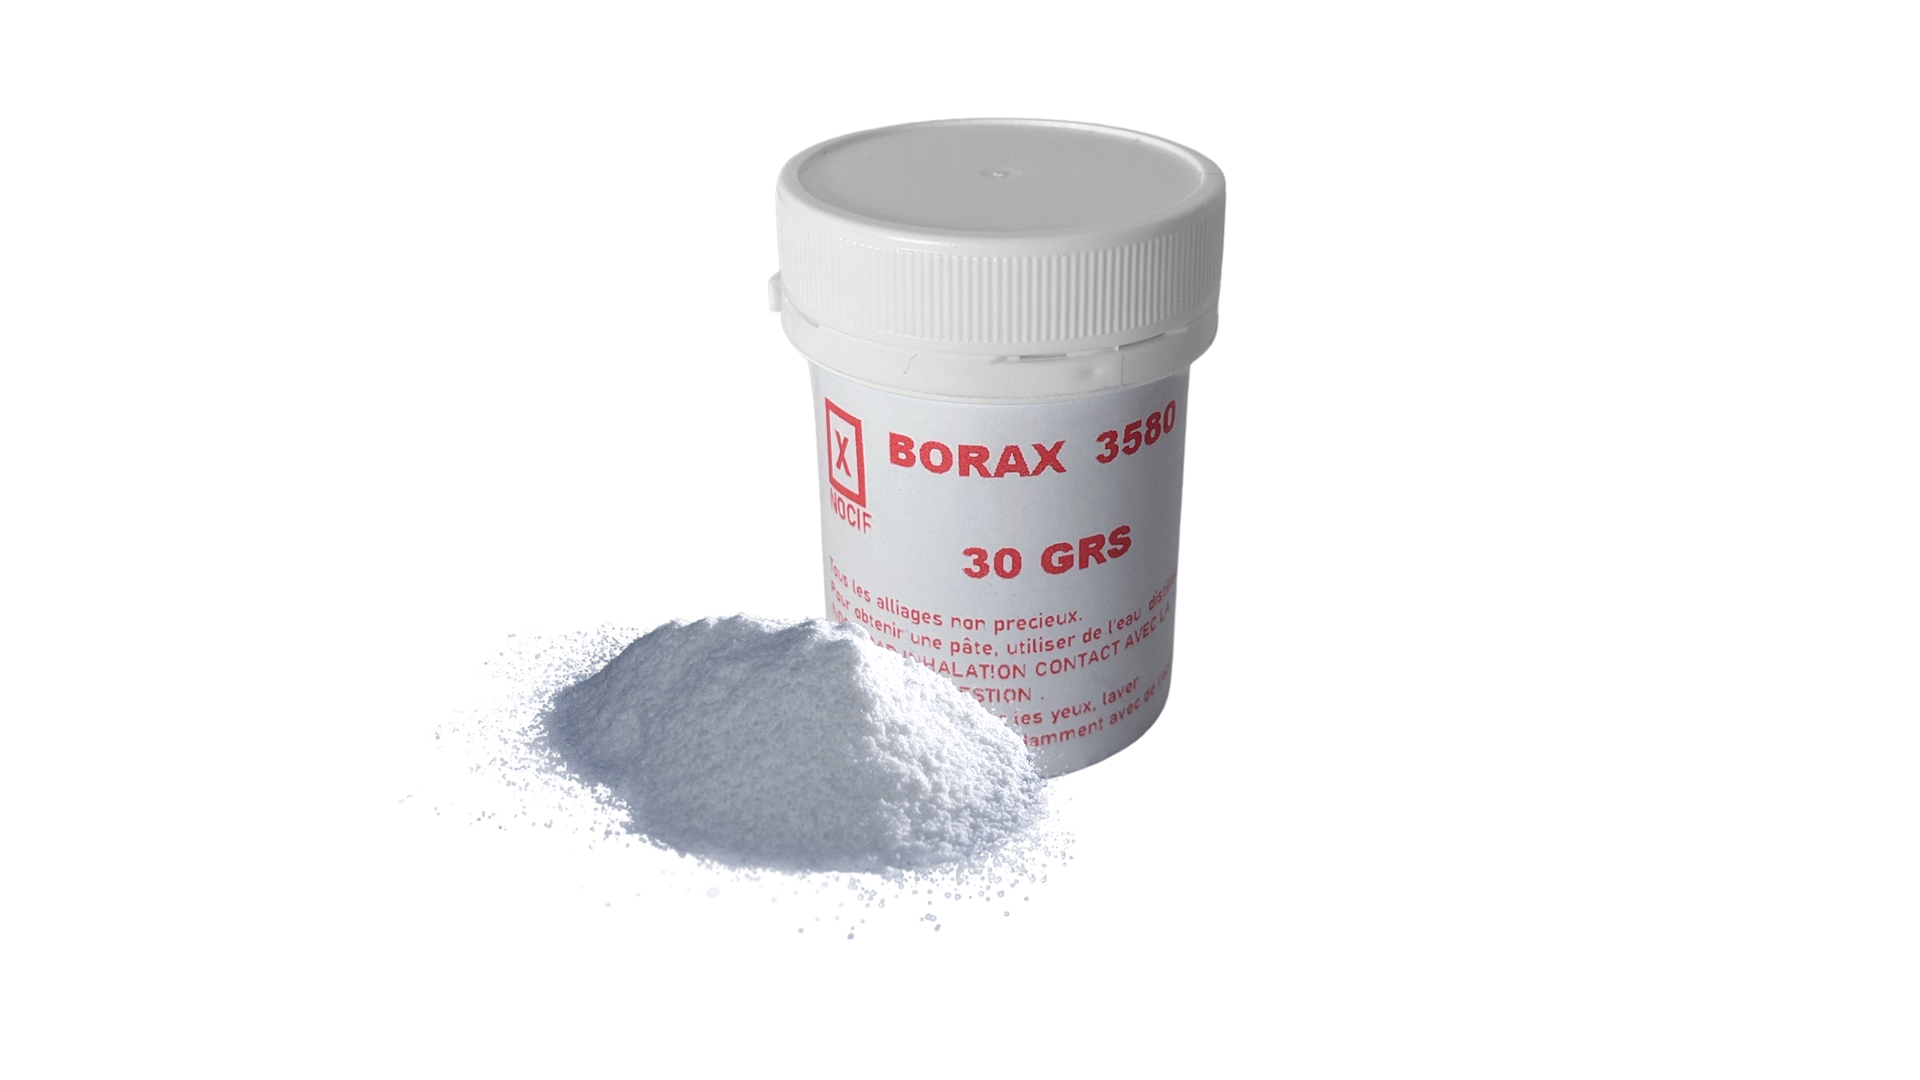 Borax 3580